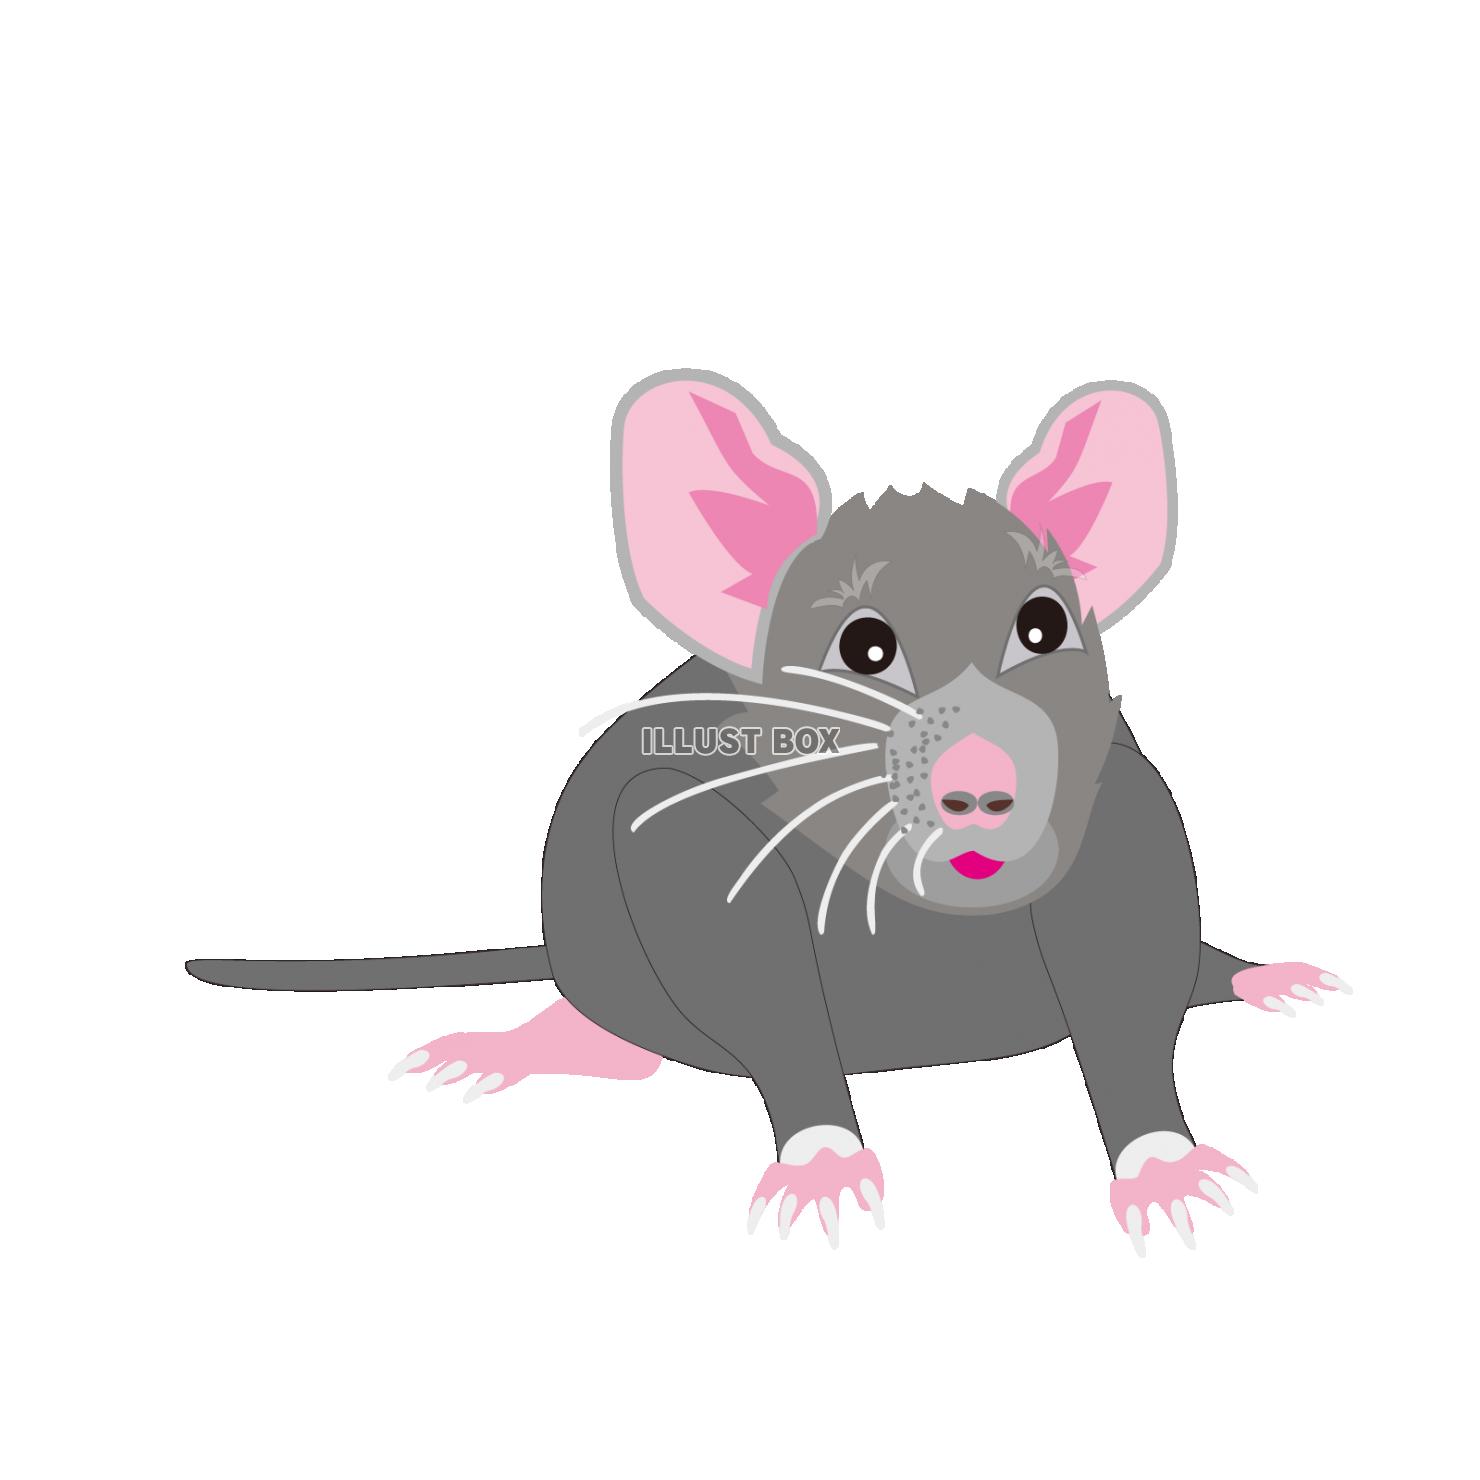 無料イラスト ネズミの可愛いイラスト 年子年の年賀状素材